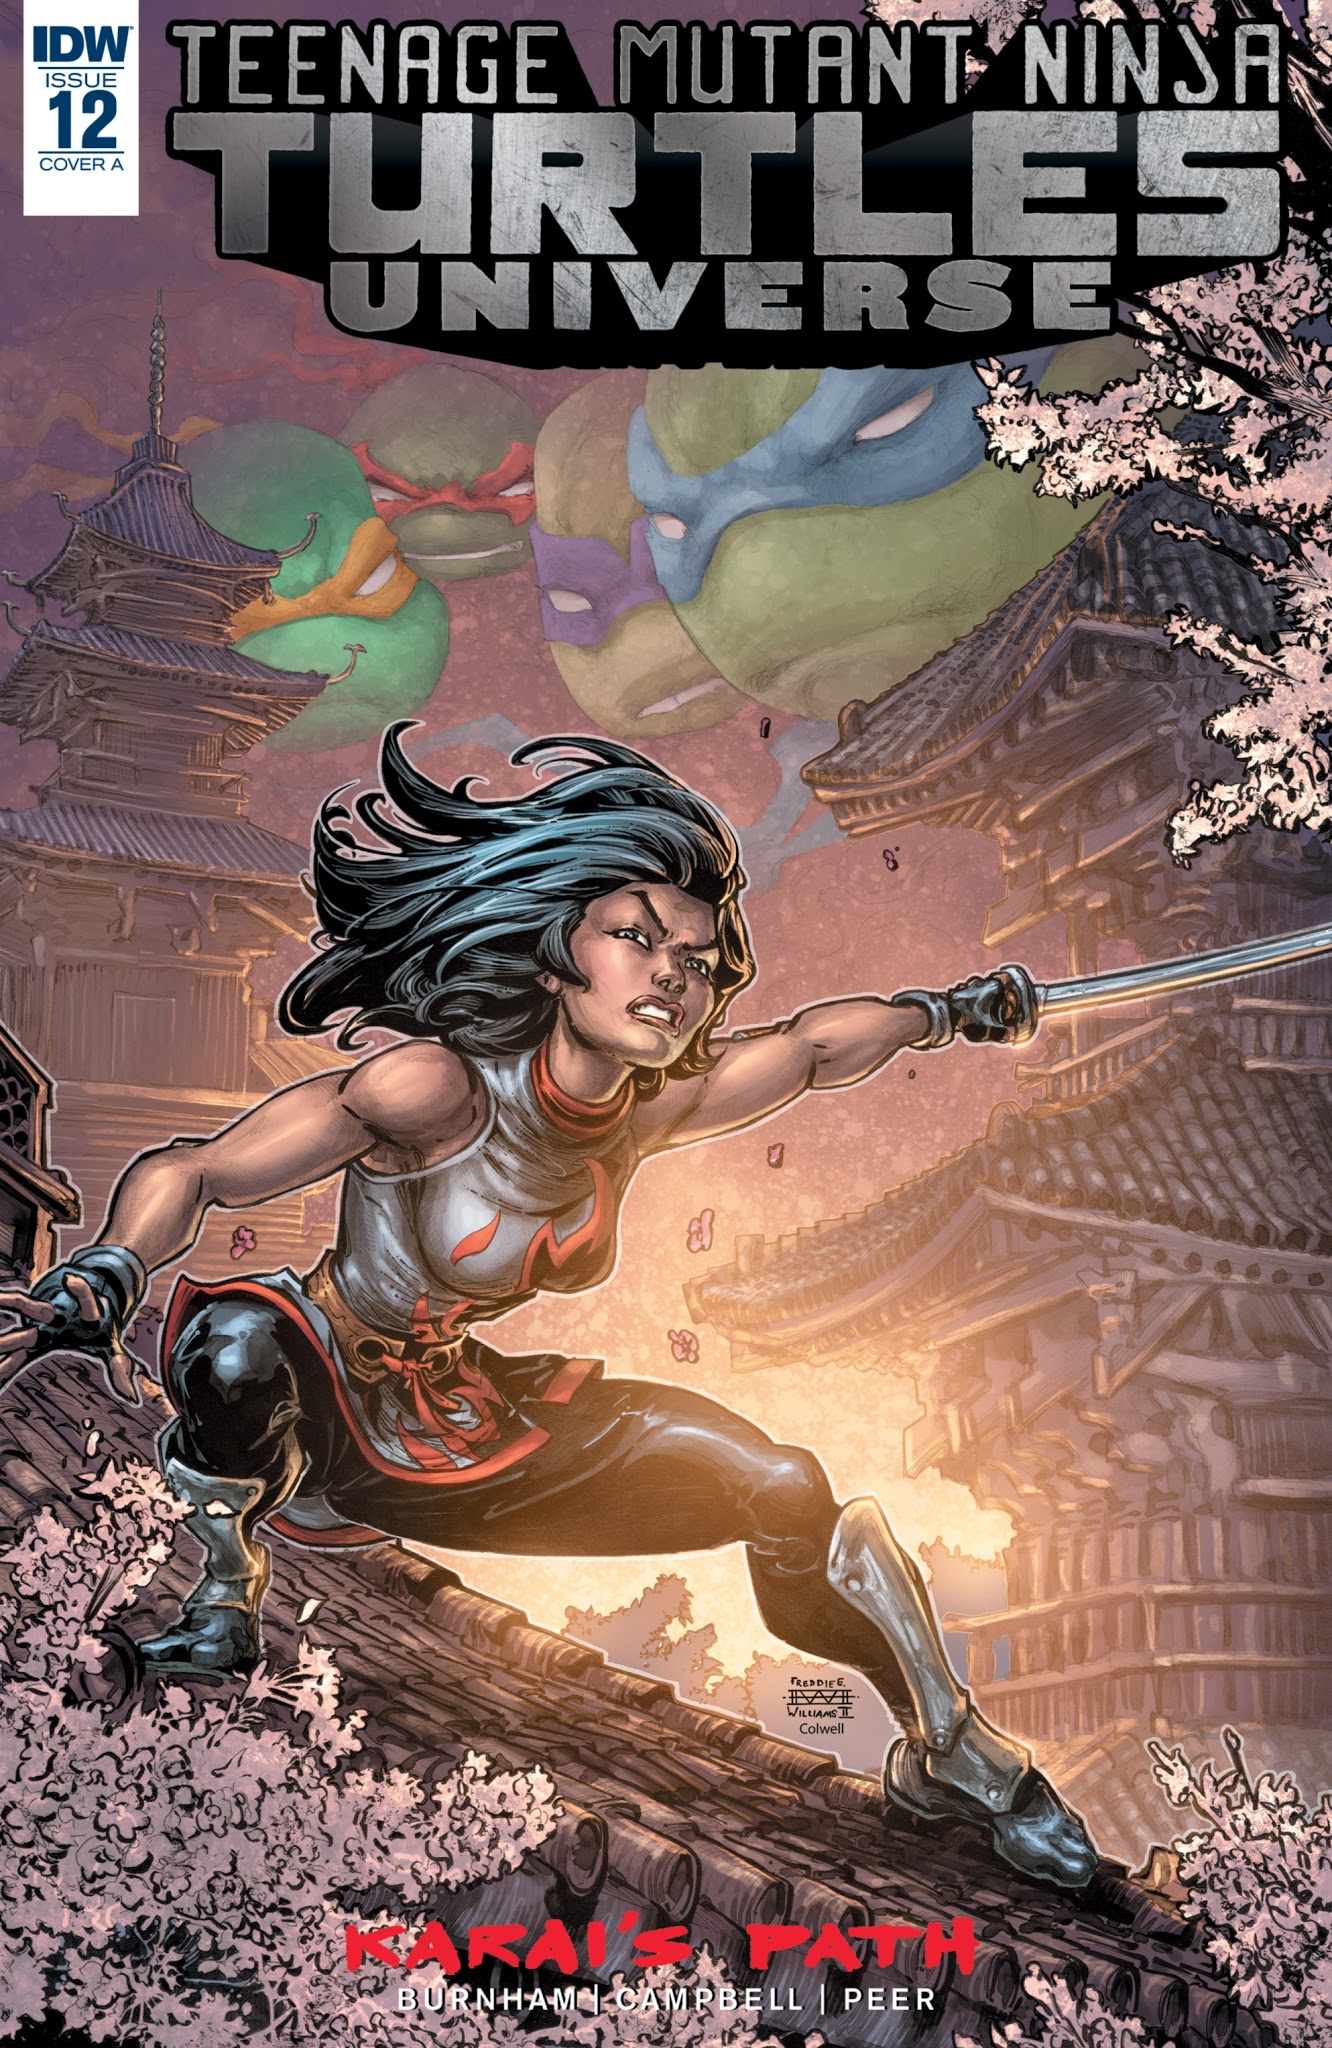 Read online Teenage Mutant Ninja Turtles Universe comic -  Issue #12 - 1